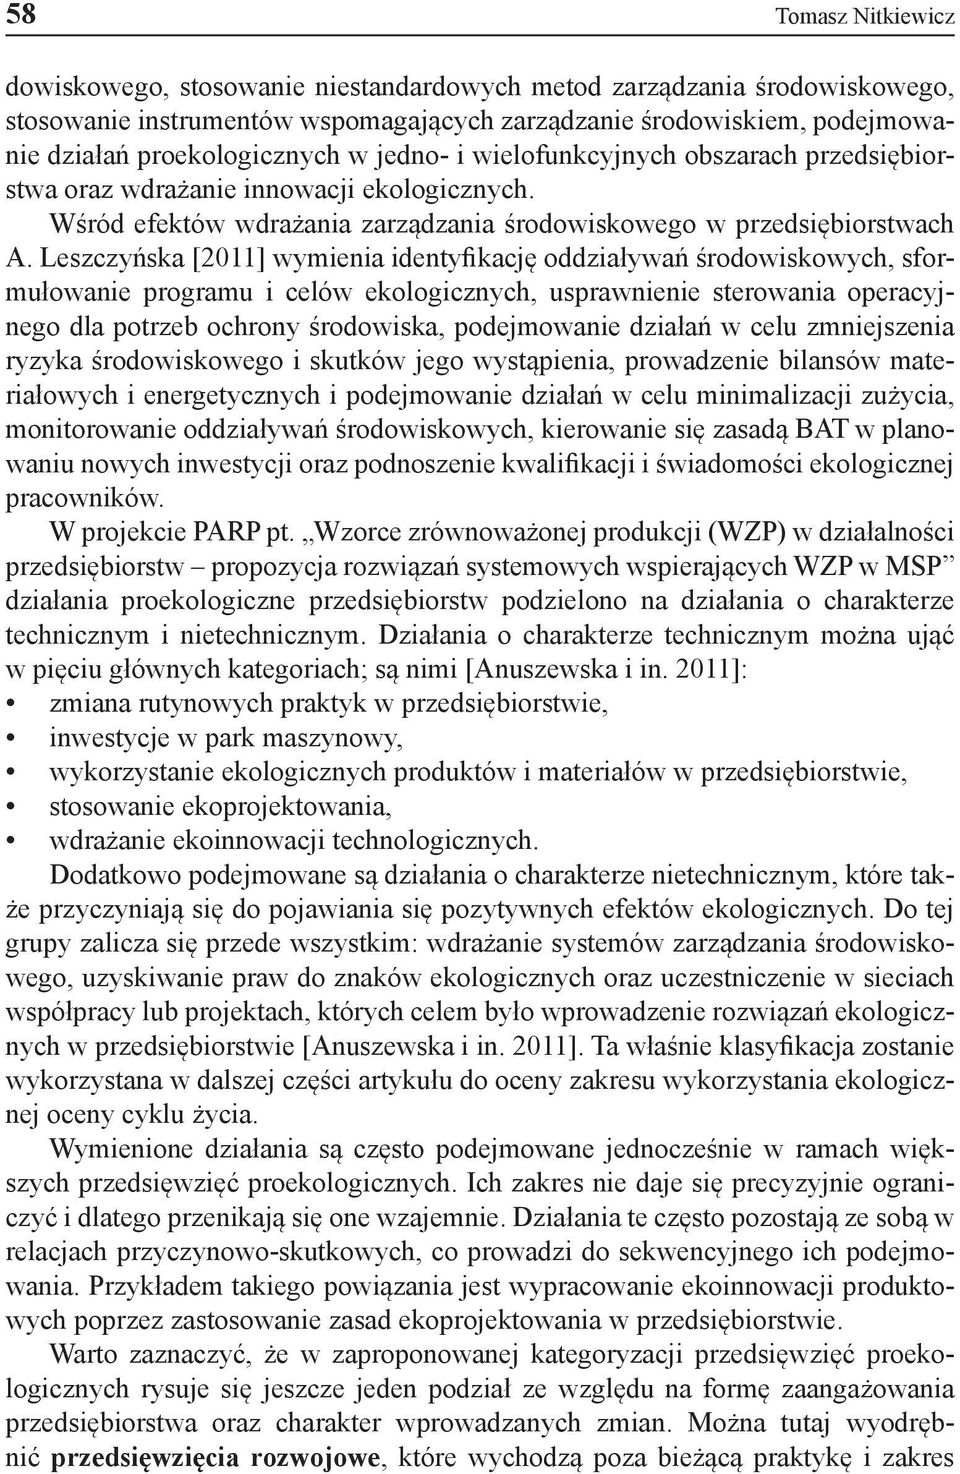 Leszczyńska [2011] wymienia identyfikację oddziaływań środowiskowych, sformułowanie programu i celów ekologicznych, usprawnienie sterowania operacyjnego dla potrzeb ochrony środowiska, podejmowanie